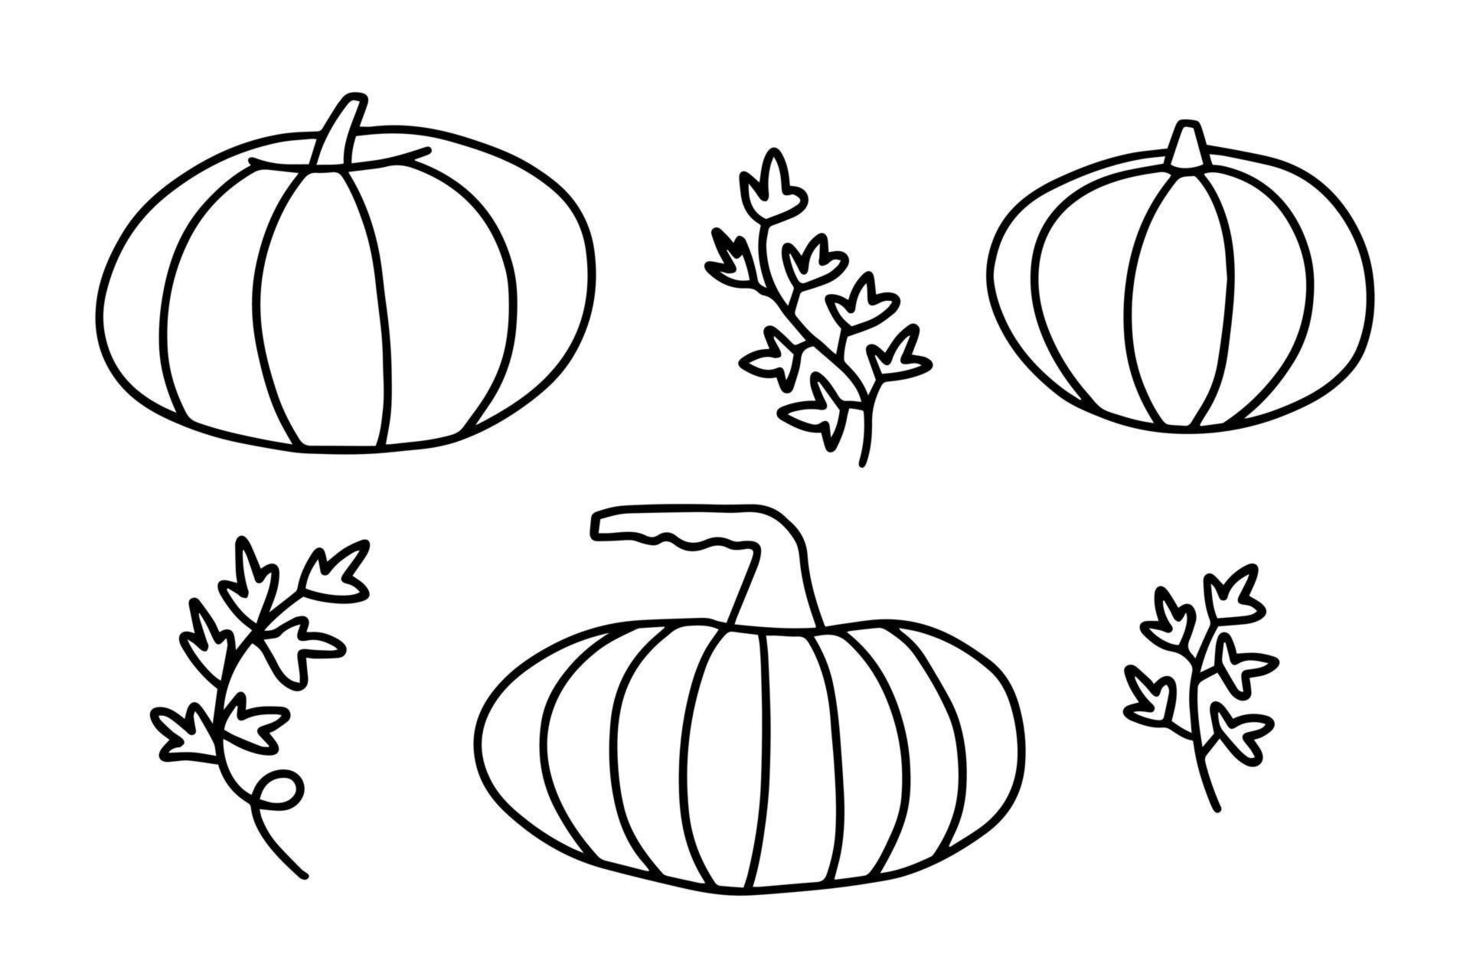 doodle vector conjunto de ilustração de abóbora, abóboras desenhadas à mão isoladas no fundo branco.